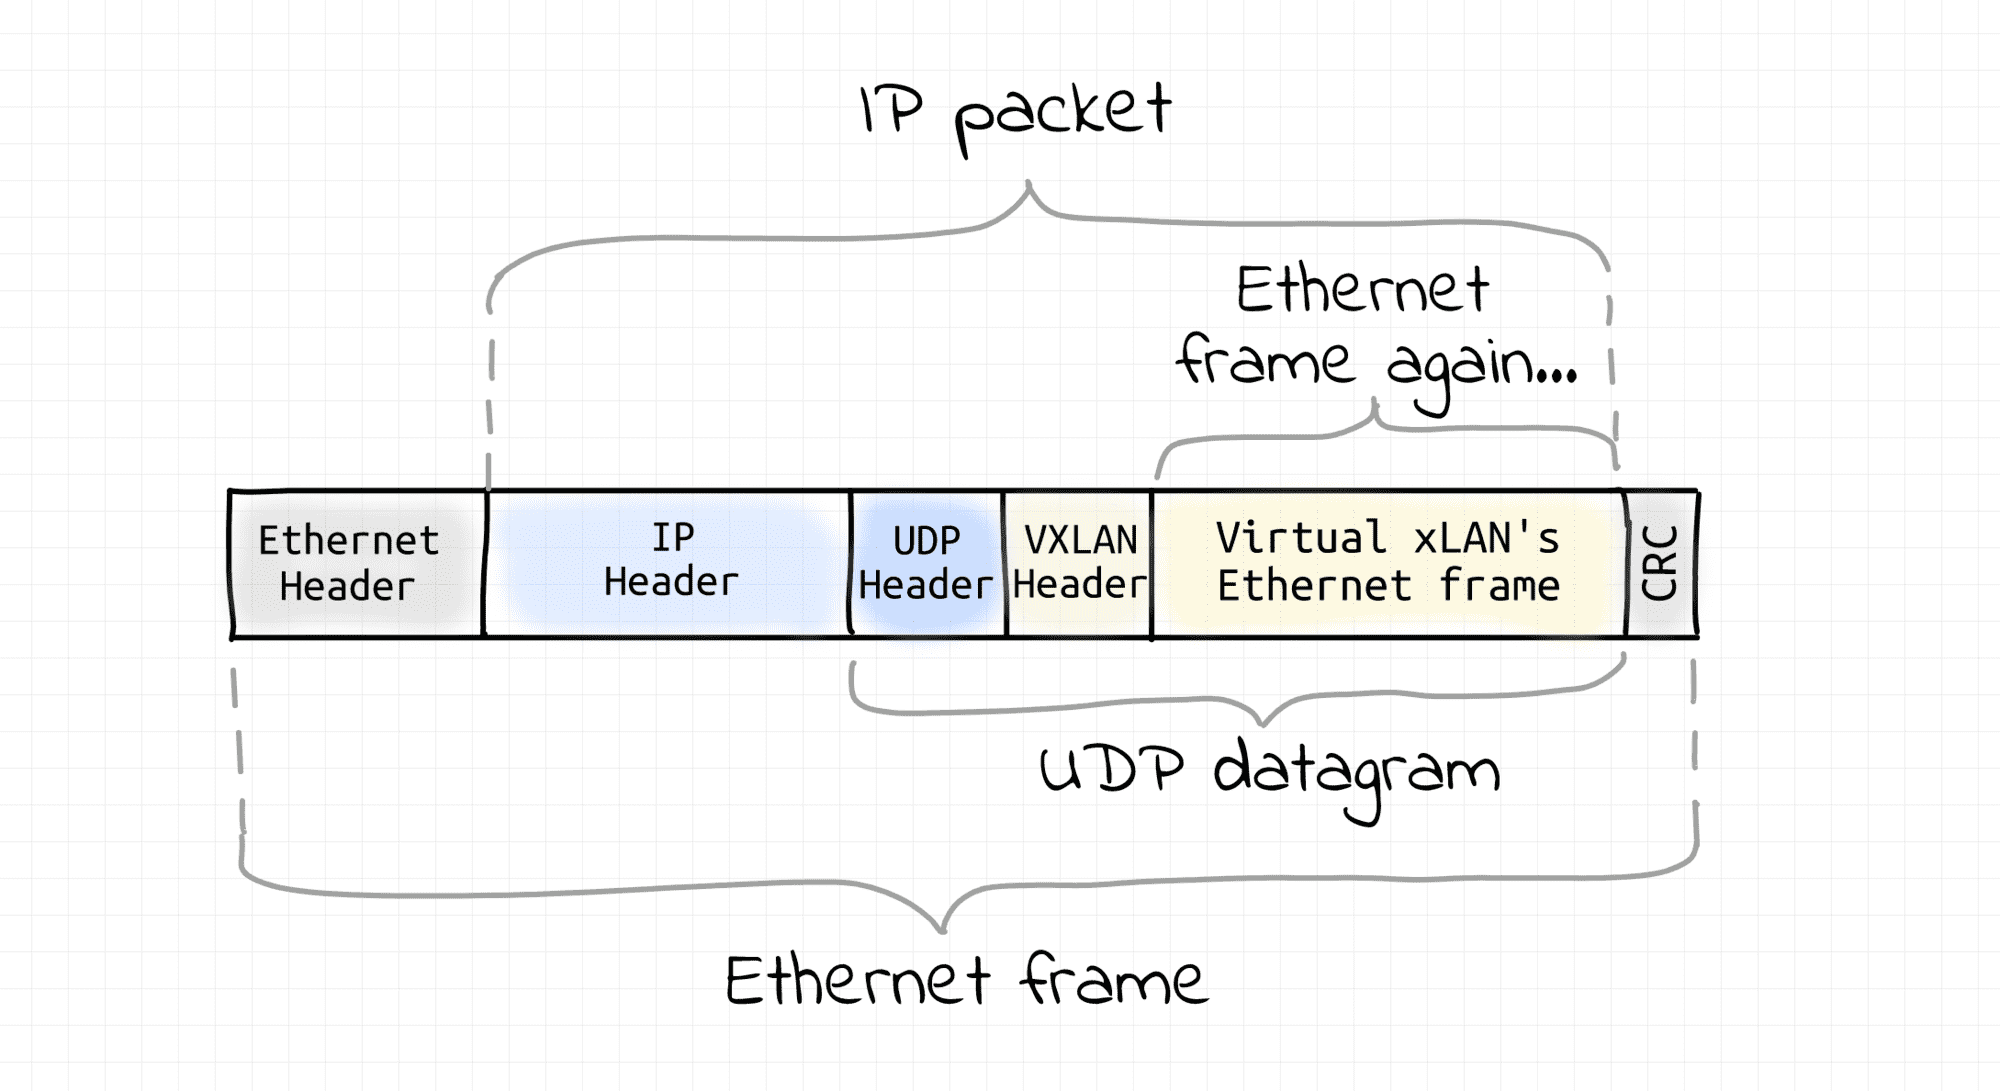 VXLAN frame encapsulated in UDP packet